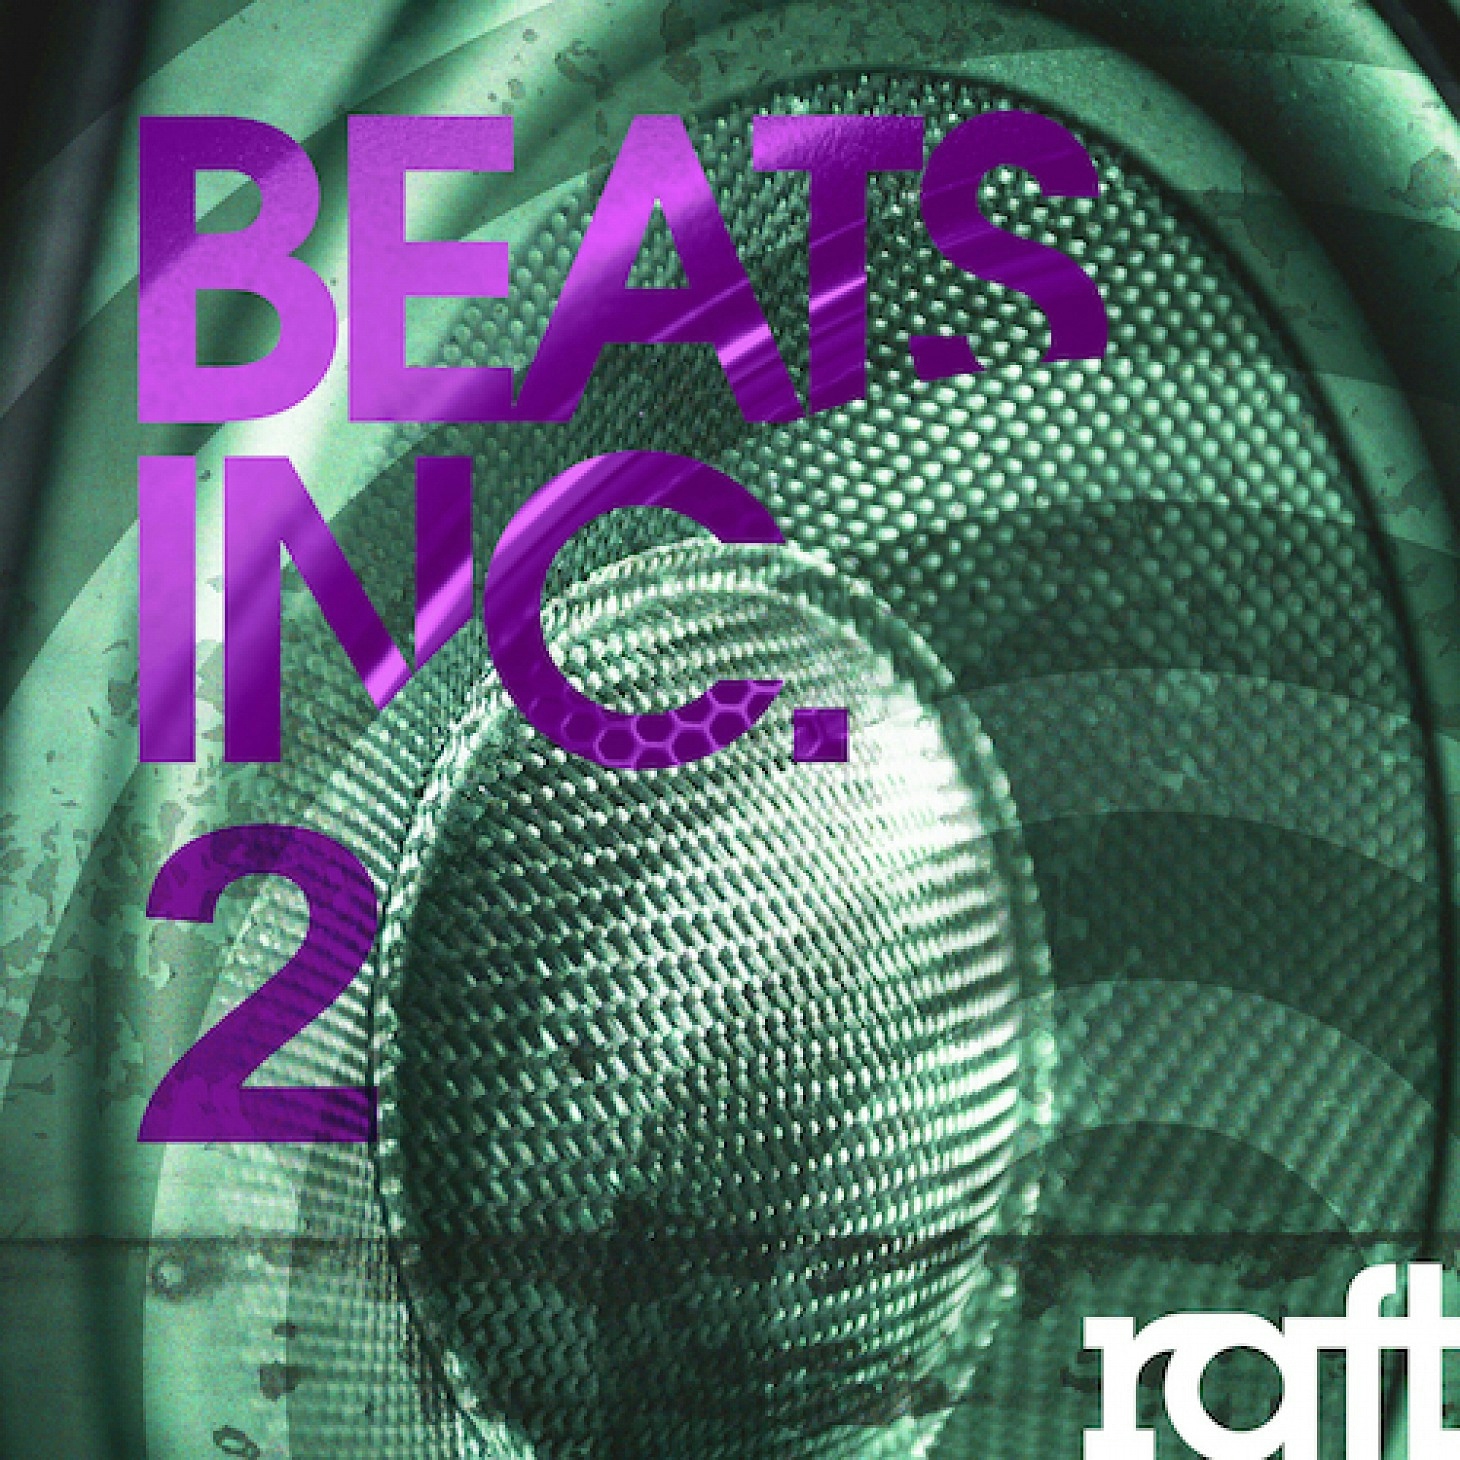 RFT090 Beats Inc. 2